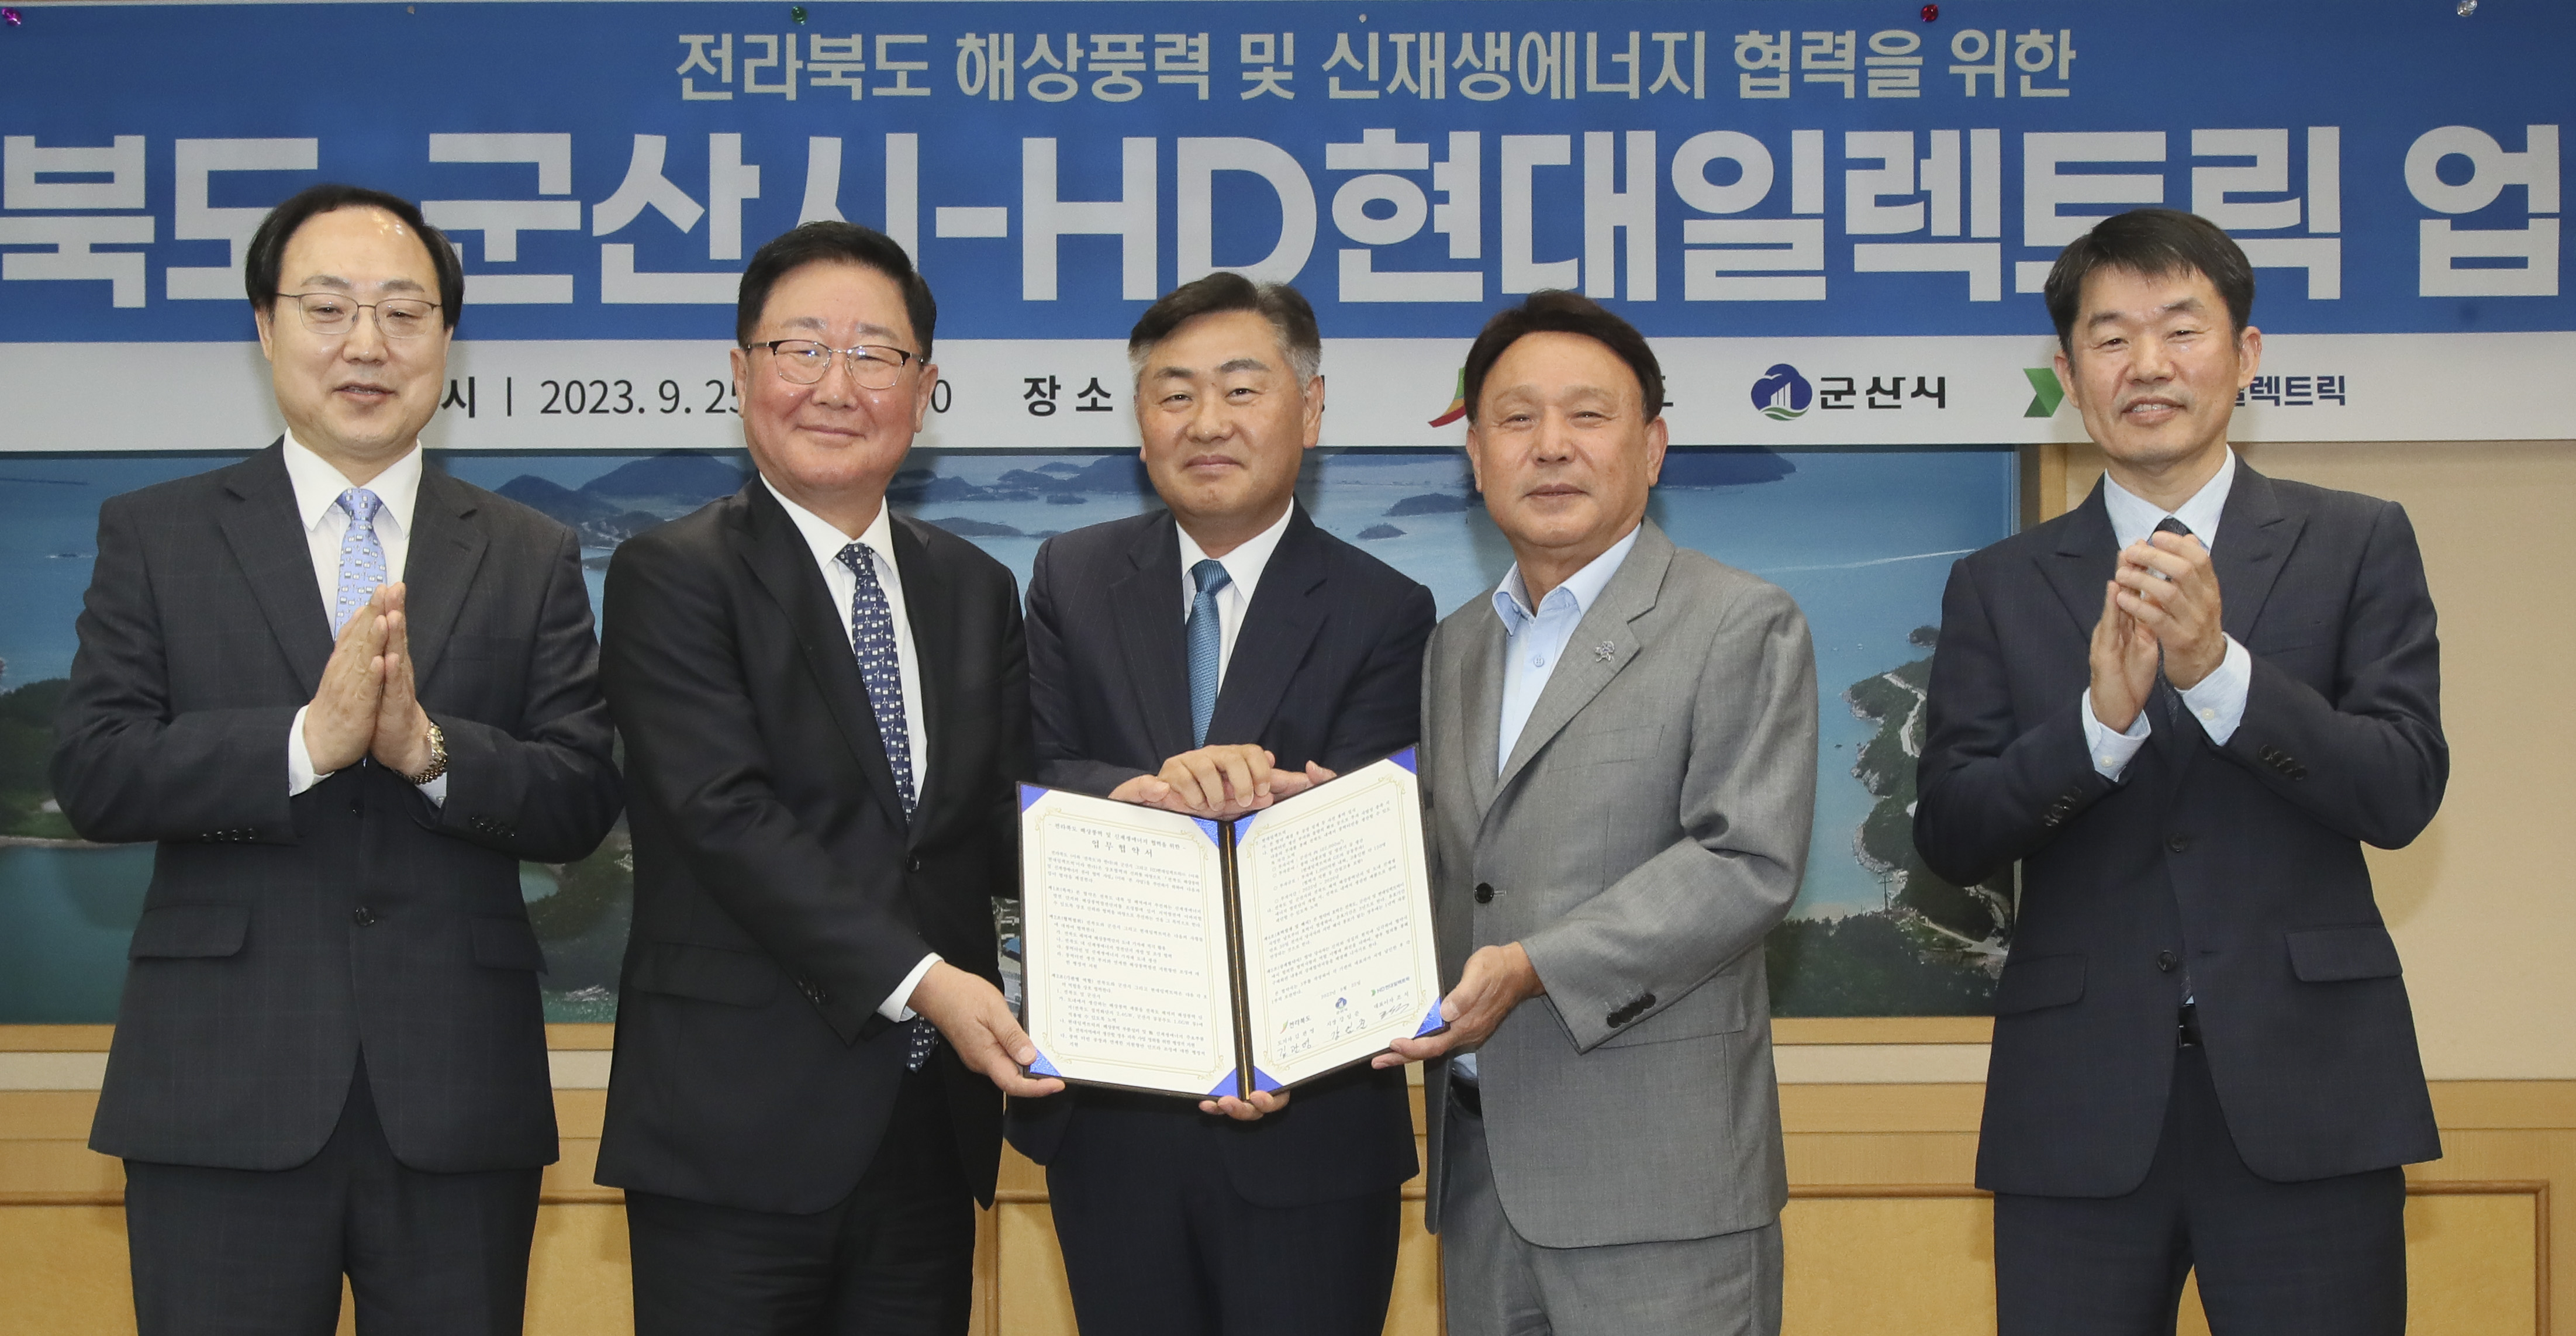 Jeollabuk-do, ký kết thoả thuận hợp tác xây dựng khu vực phát triển năng lượng gió ngoài khơi image(1)